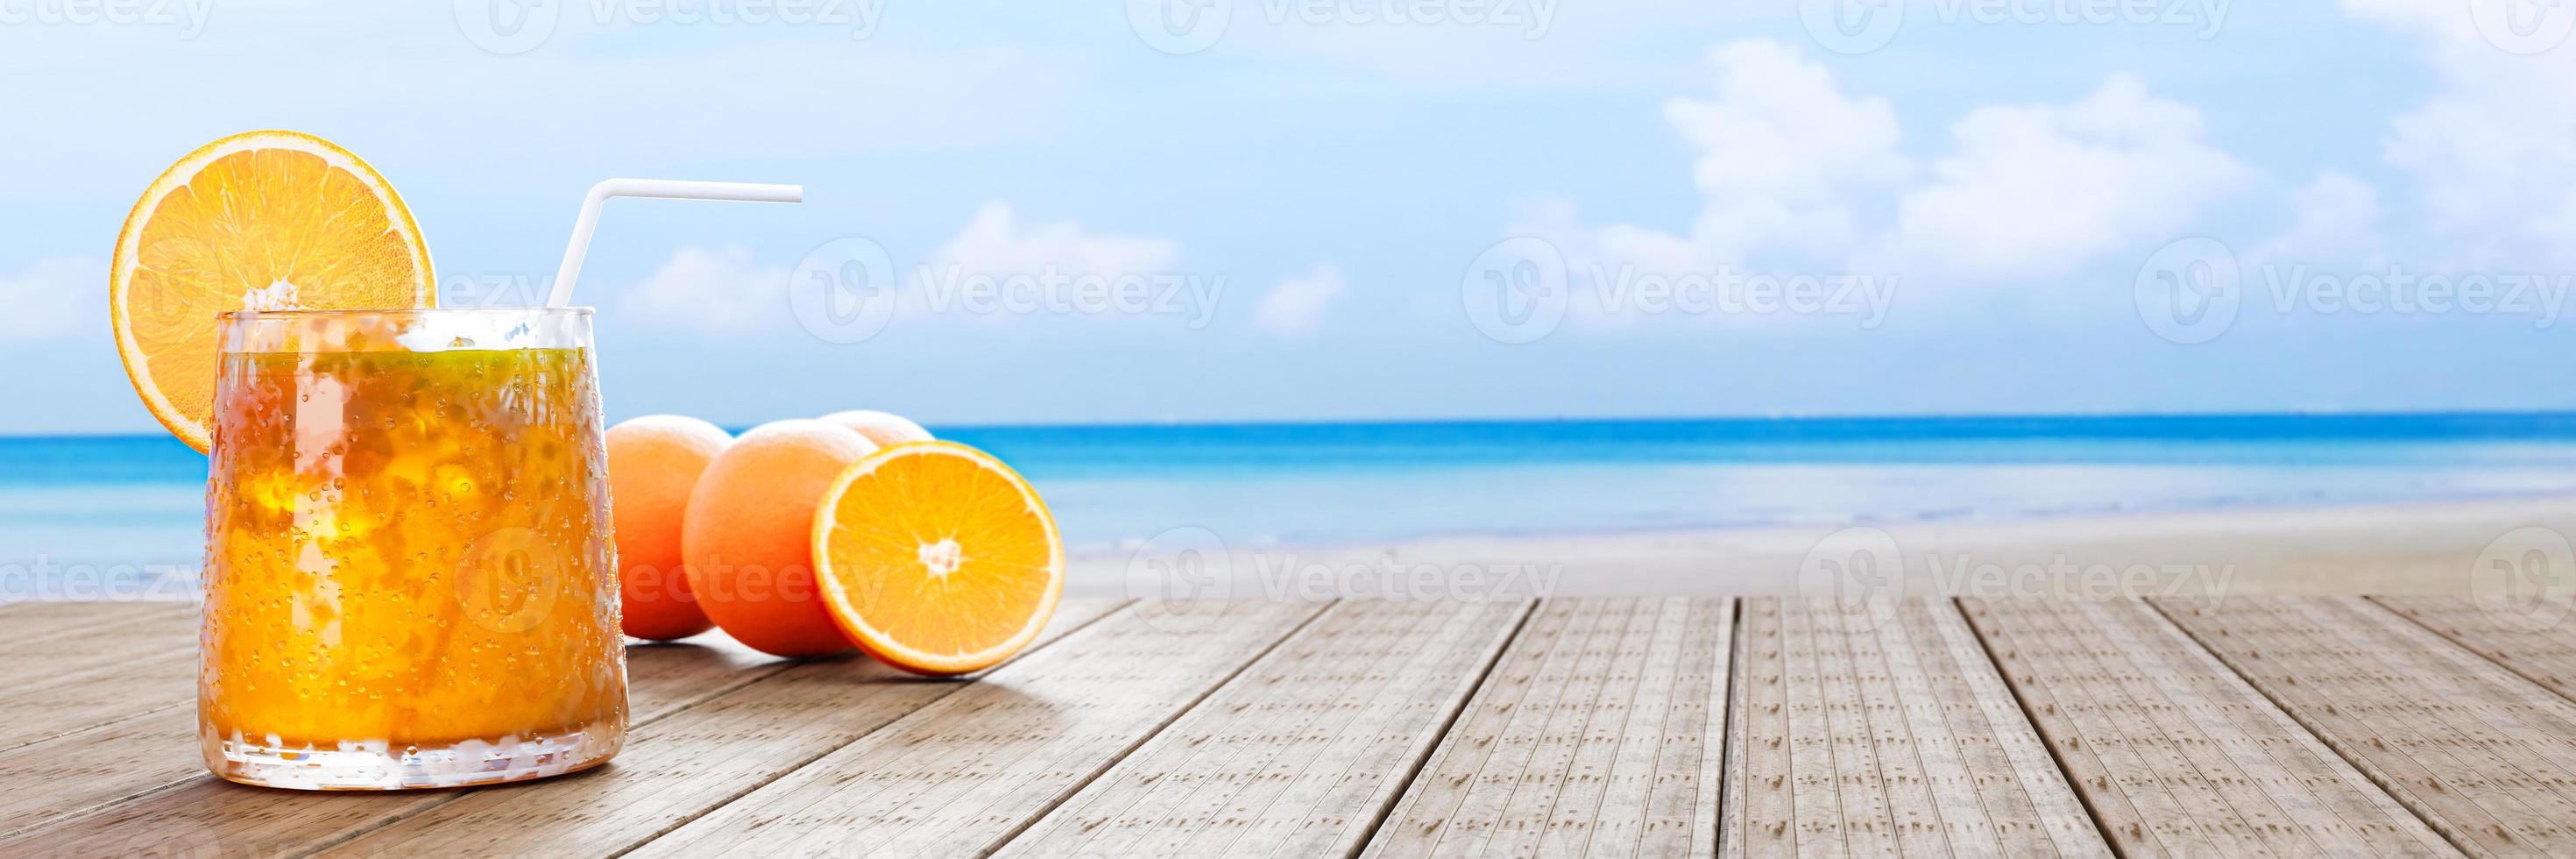 sinaasappelsap in een helder glas met ijsblokjes en sinaasappelsap aan de monding van het glas. koude dranken midden op de dag op het houten balkon aan zee geplaatst. 3D-rendering foto